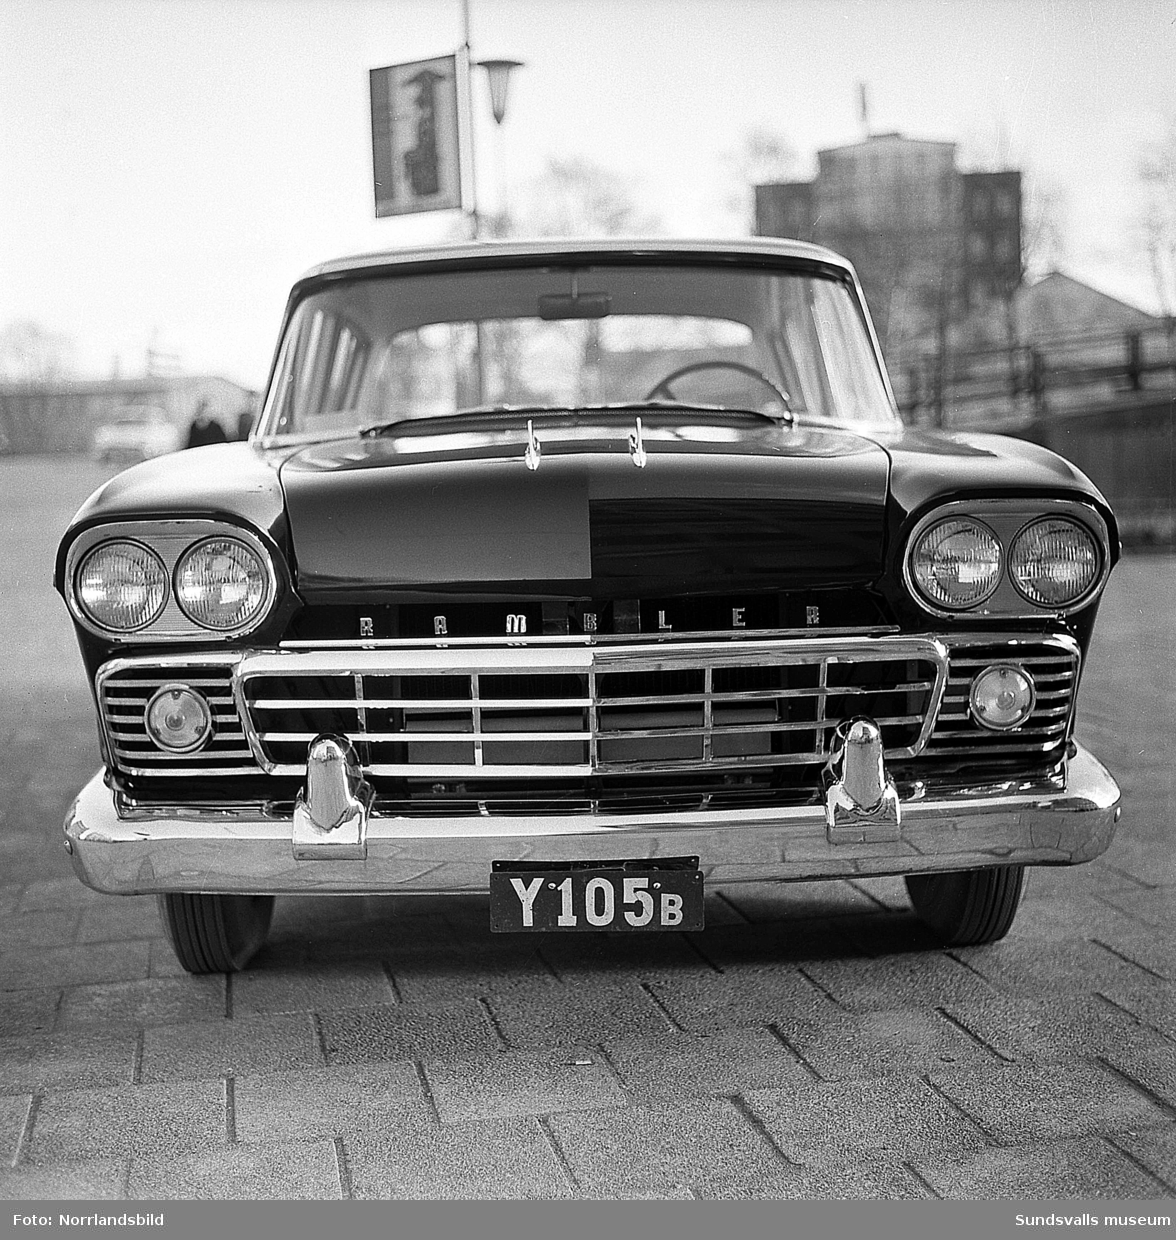 Svenska Bilimporten AB vid Köpmangatan 1 presenterar en Rambler Super årsmodell 1958.